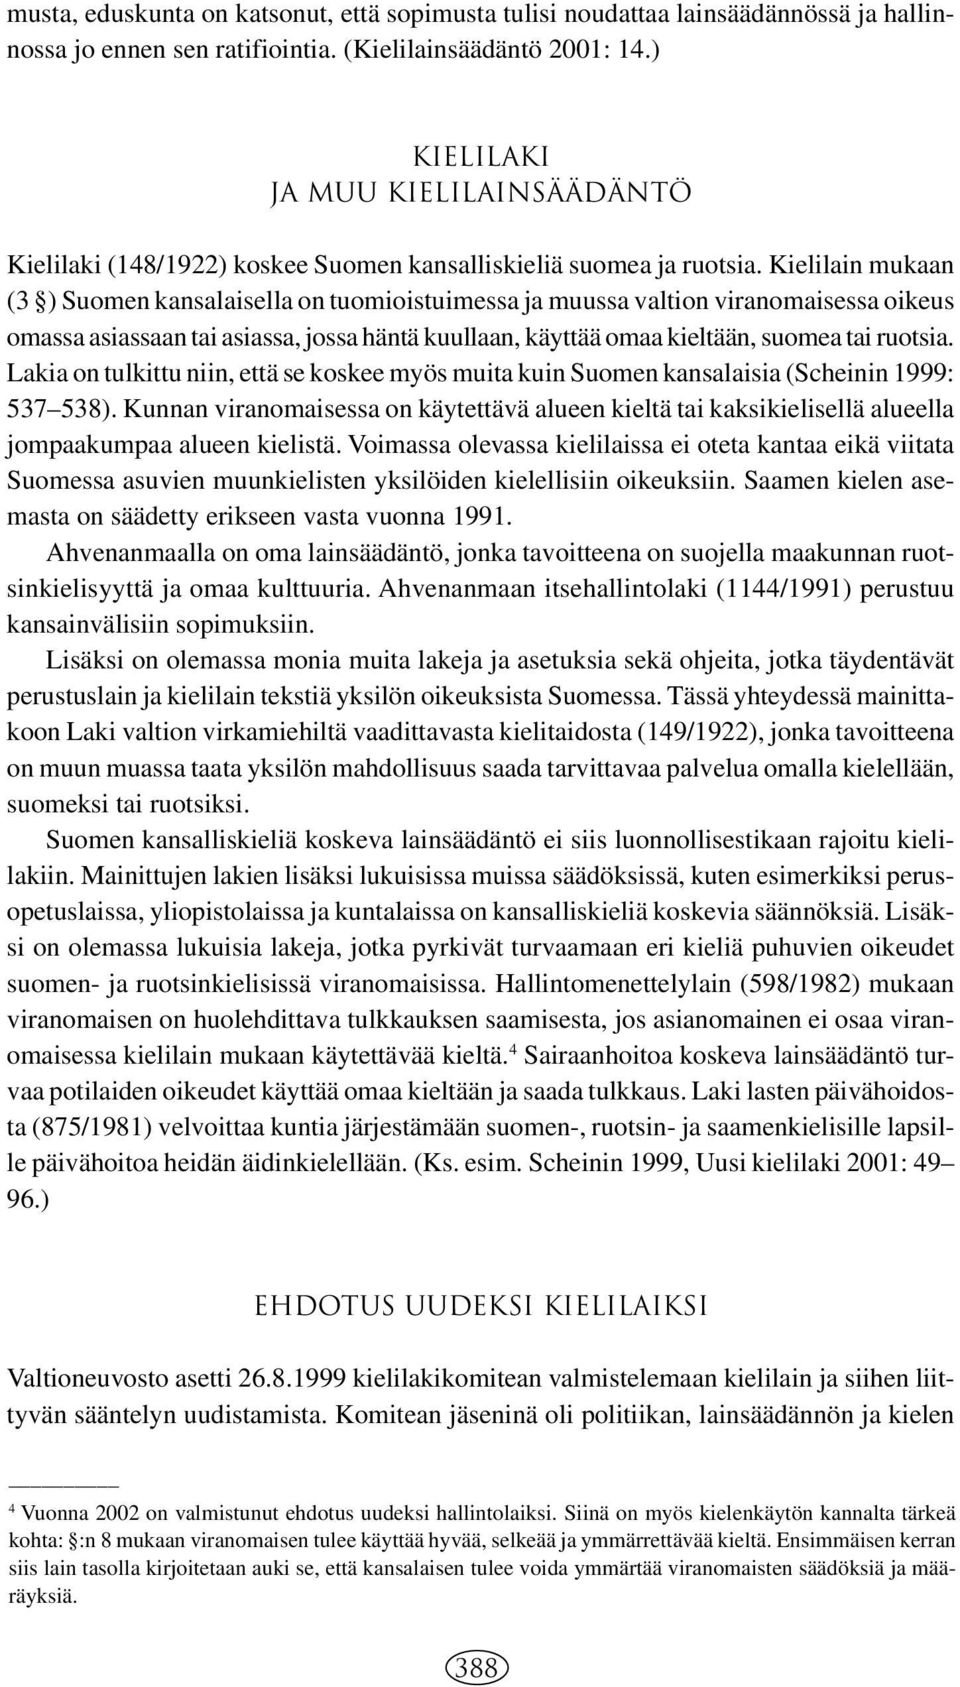 Kielilain mukaan (3 ) Suomen kansalaisella on tuomioistuimessa ja muussa valtion viranomaisessa oikeus omassa asiassaan tai asiassa, jossa häntä kuullaan, käyttää omaa kieltään, suomea tai ruotsia.